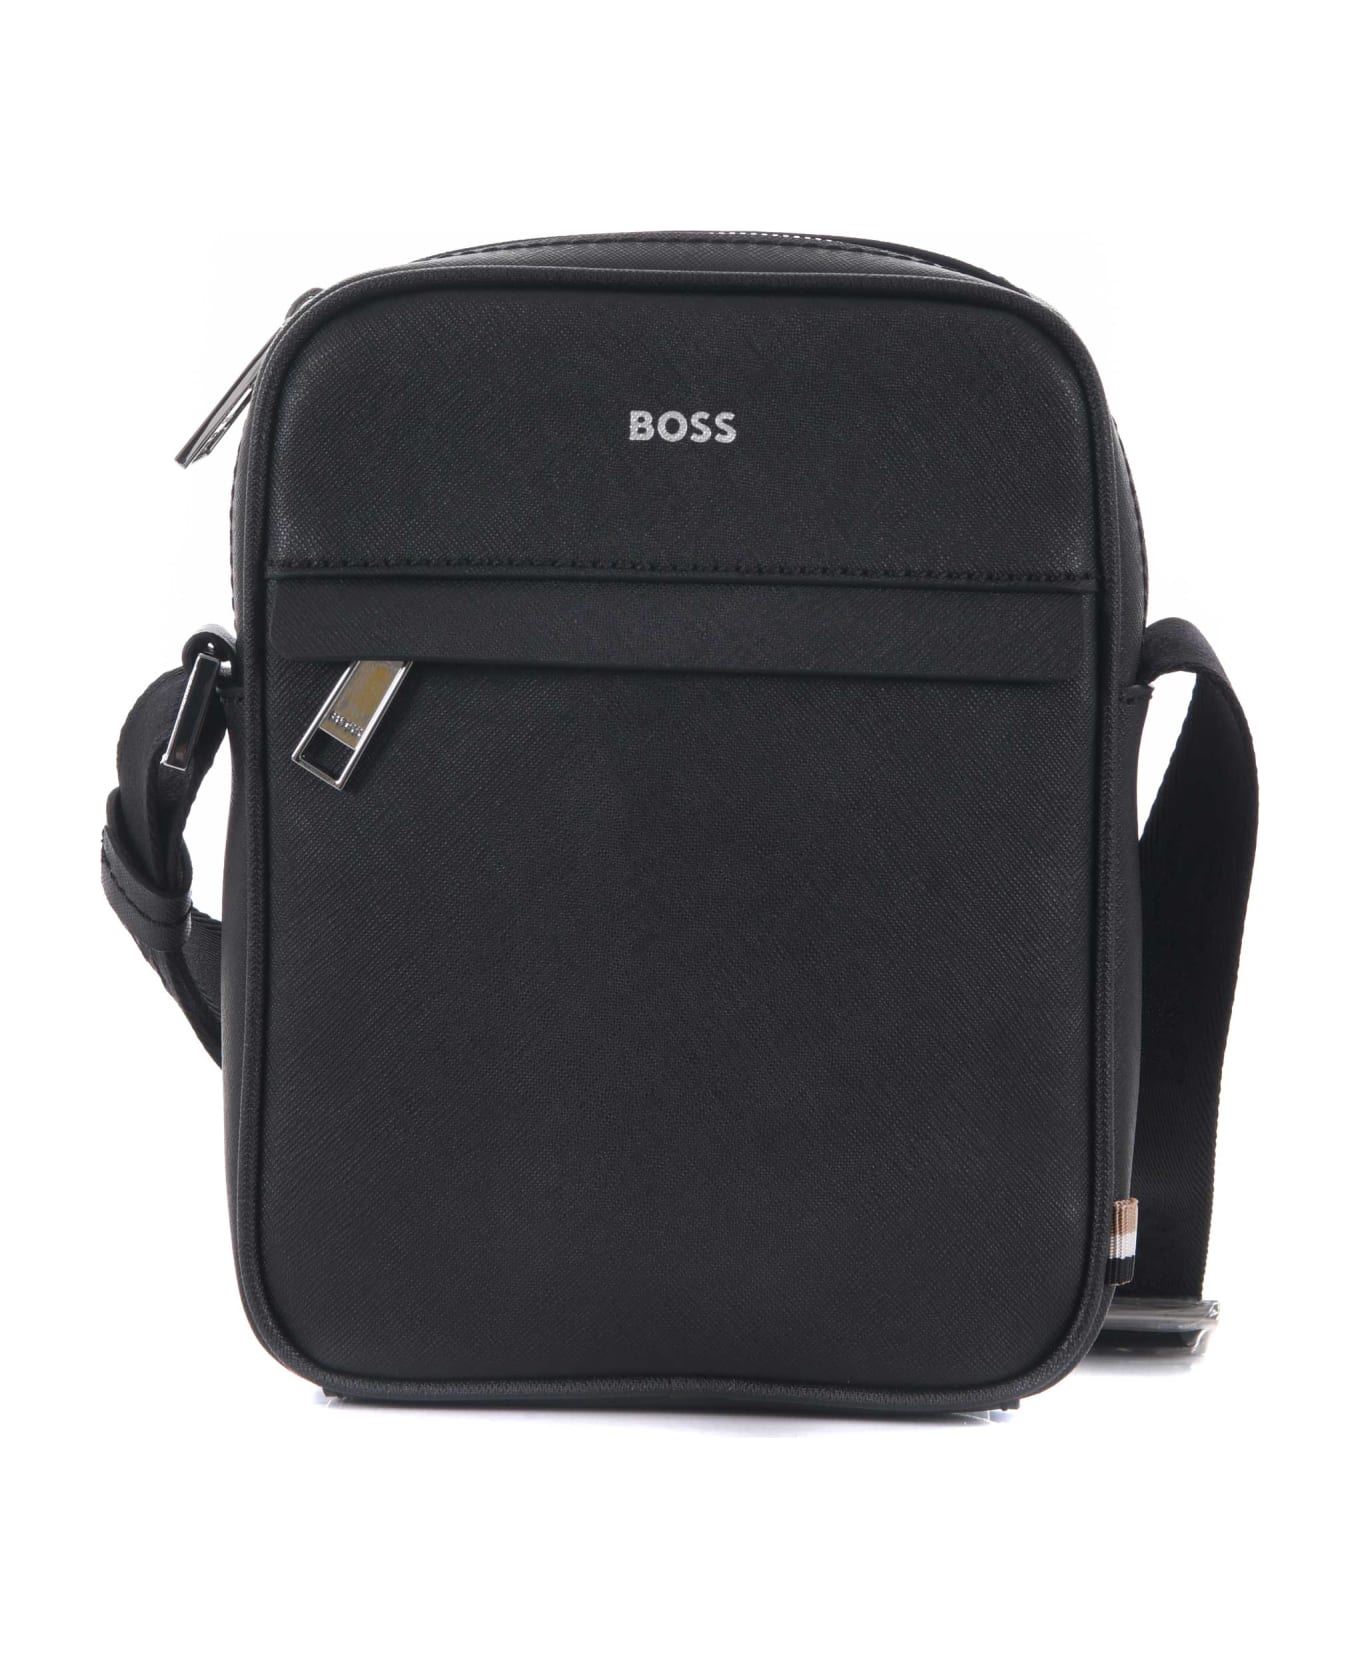 Hugo Boss Boss Shoulder Bag - Nero ショルダーバッグ